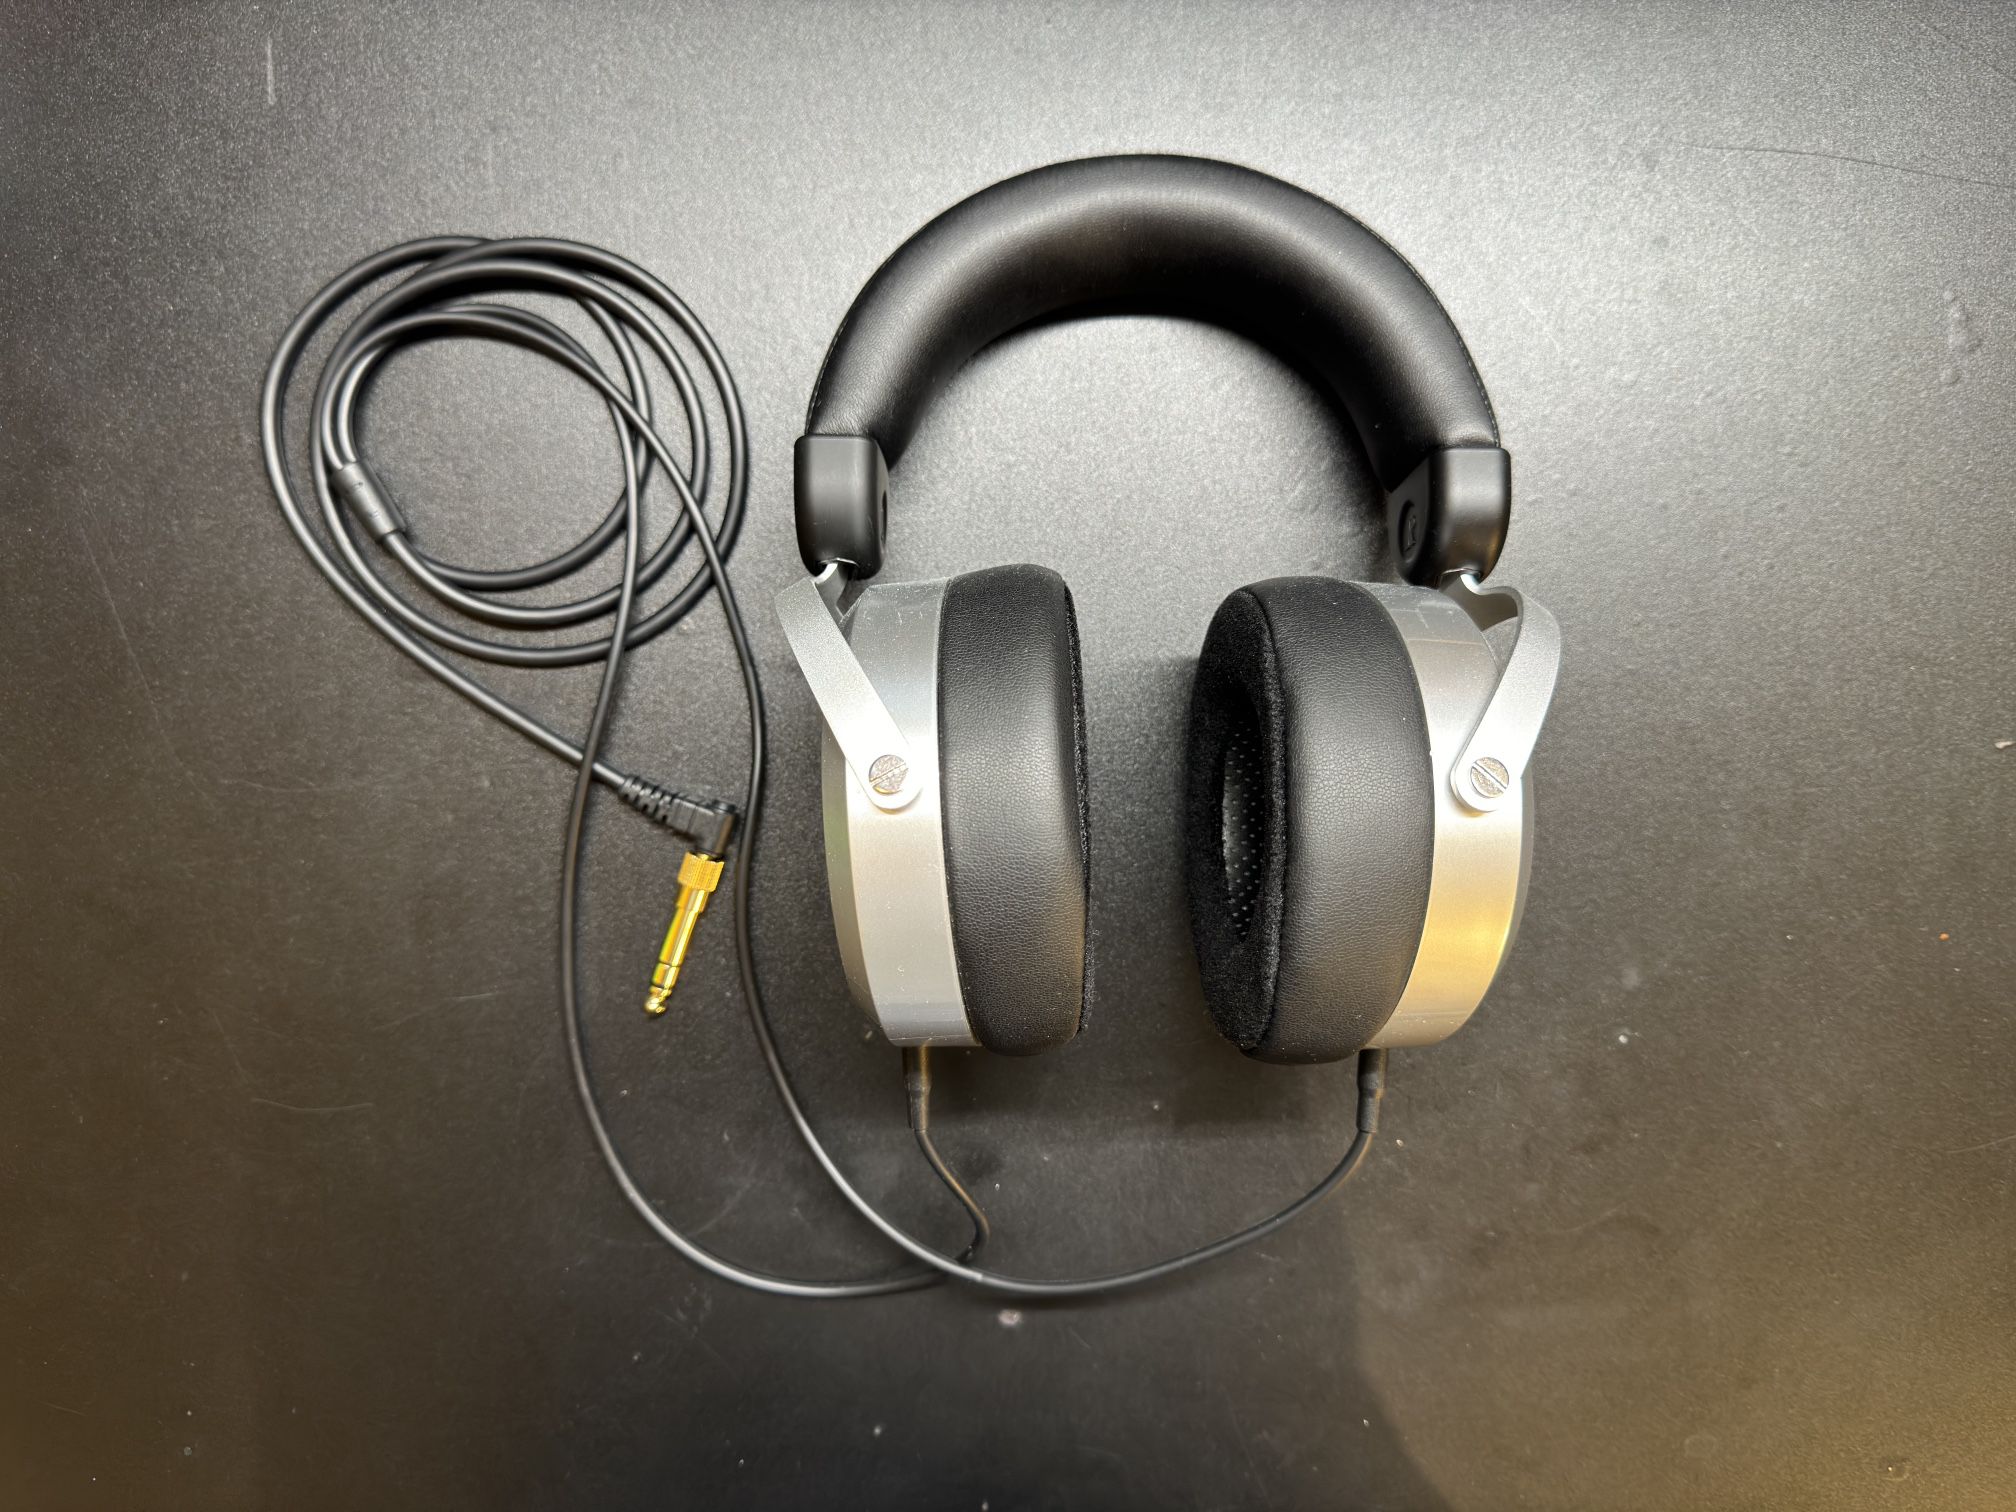 Hifiman HE400SE Open-Back Planar Magnetic Headphones